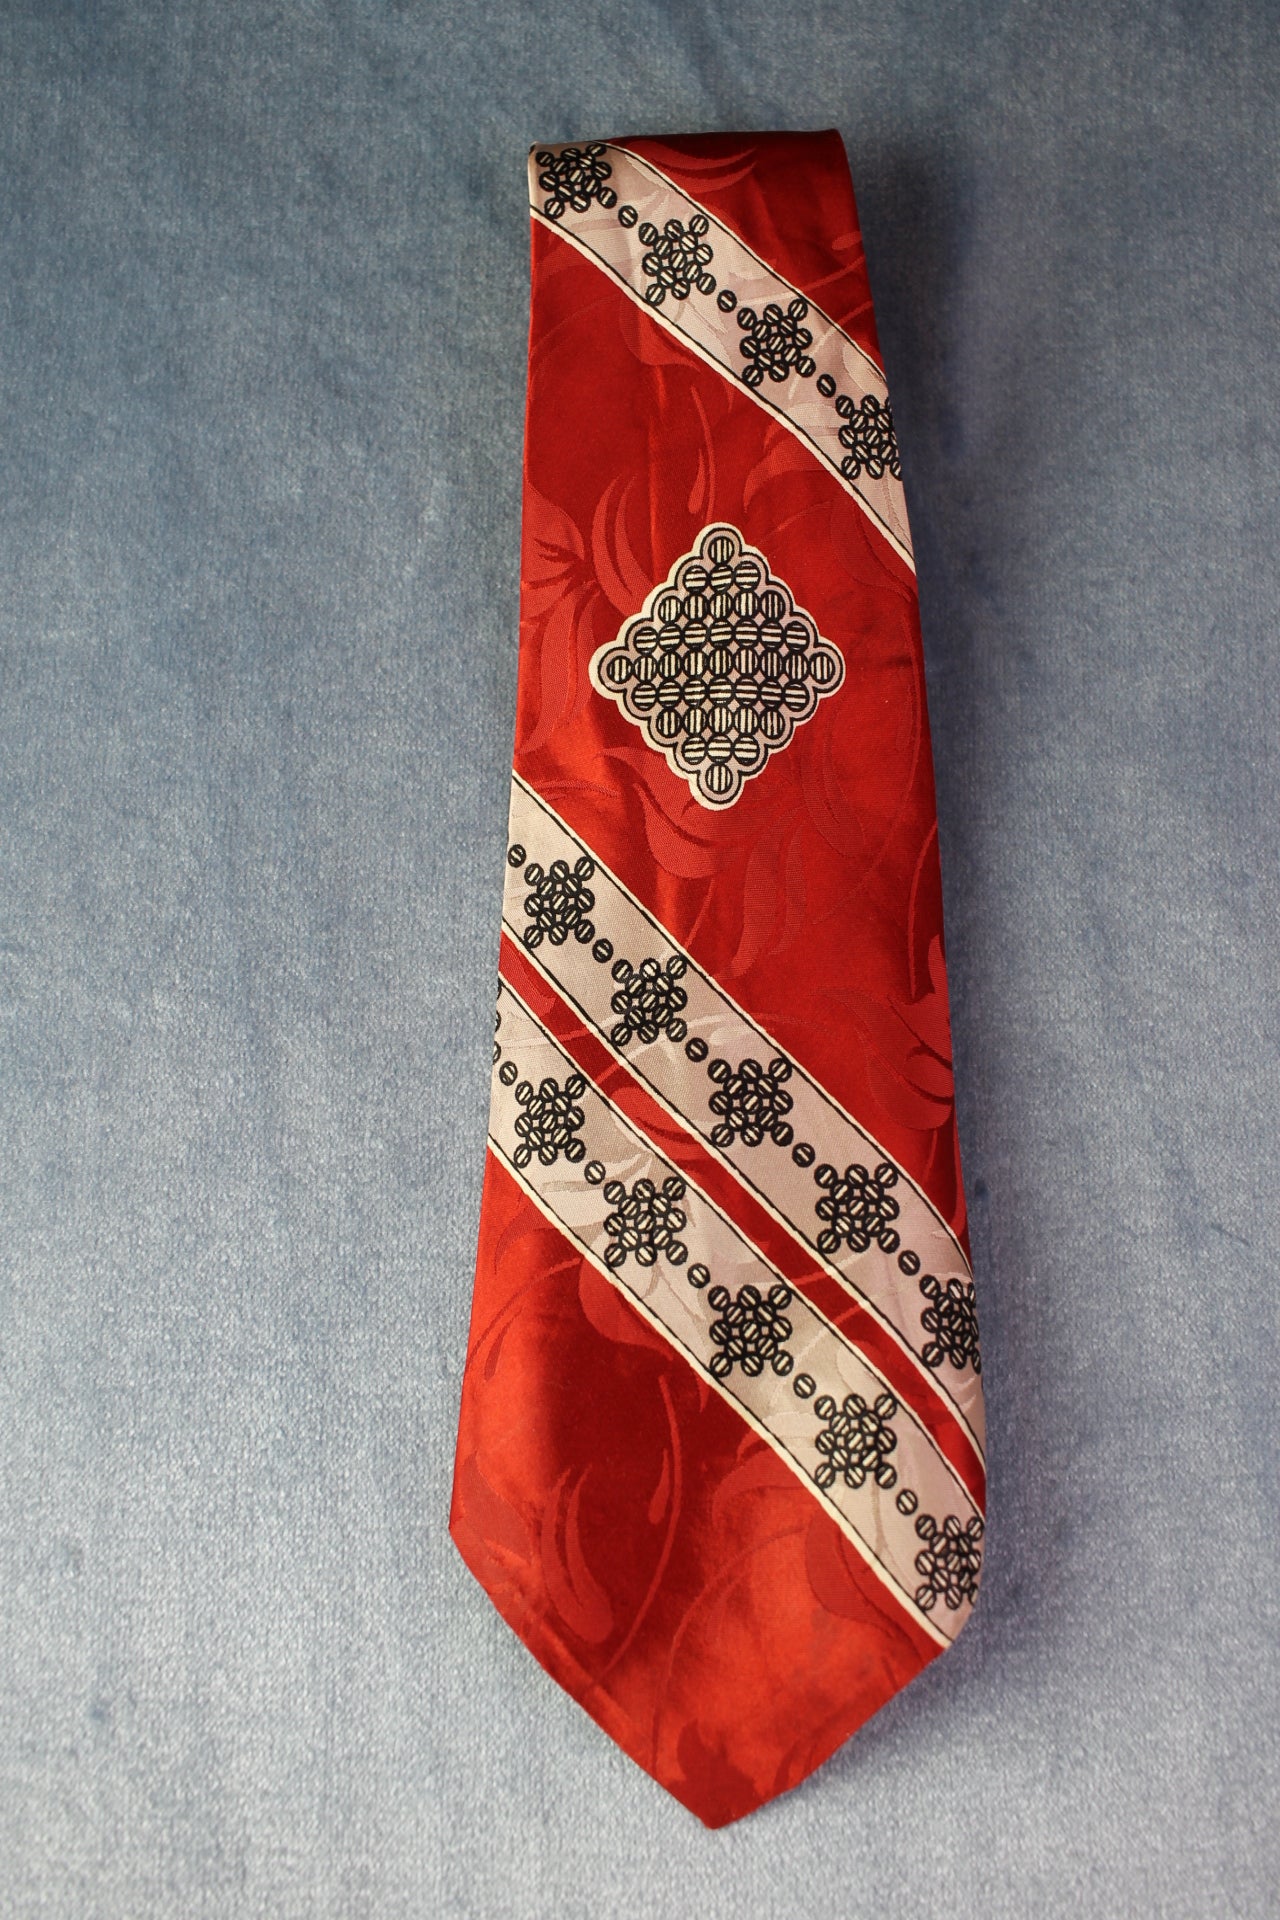 Vintage hand printed dark red white grey pattern skinny tie